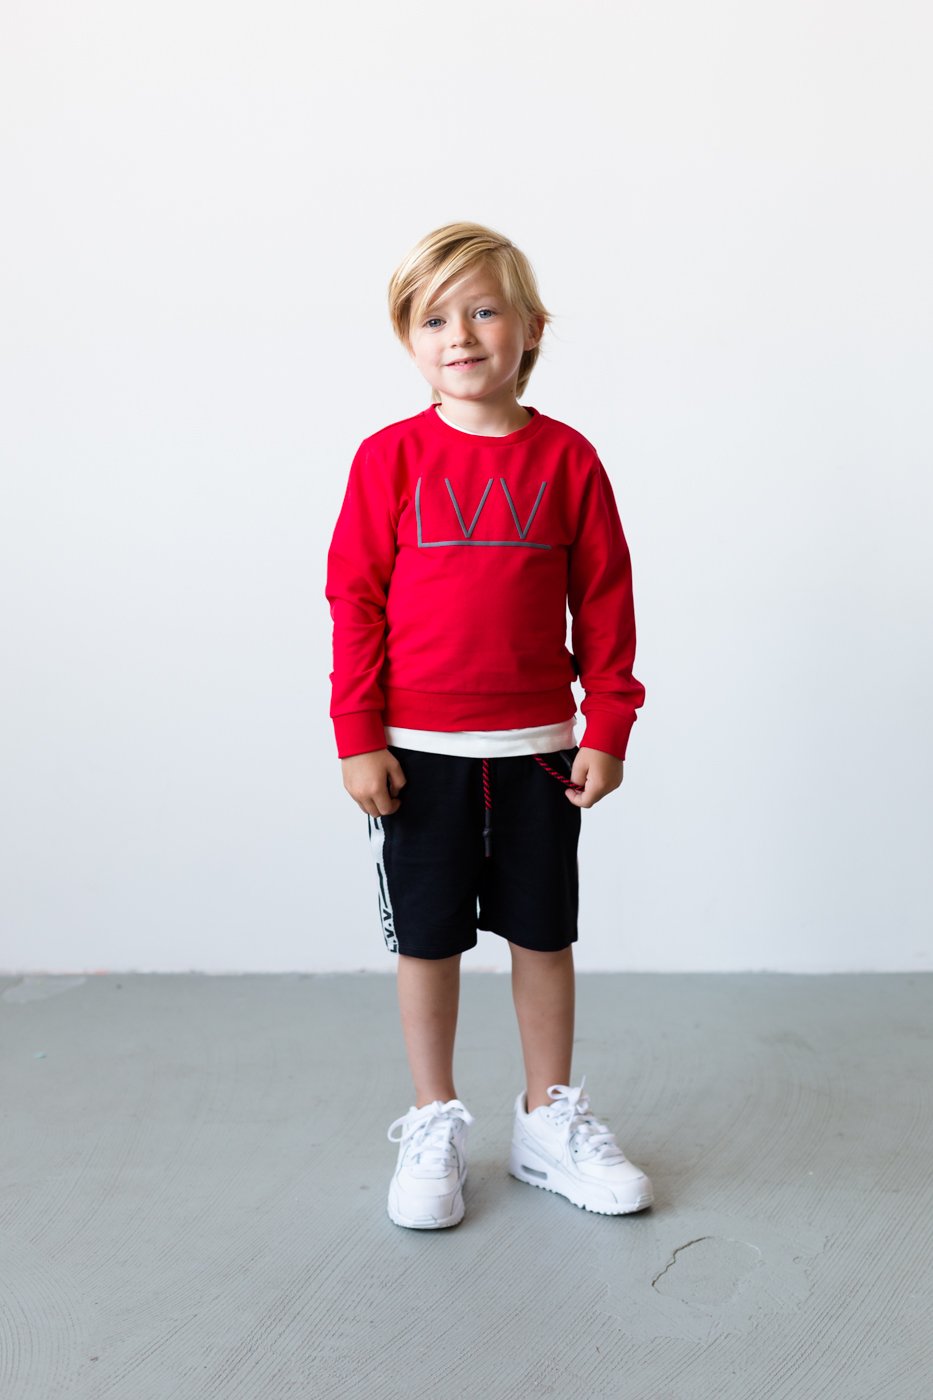 Jongens Sweater van Little Levv in de kleur Red in maat 116.